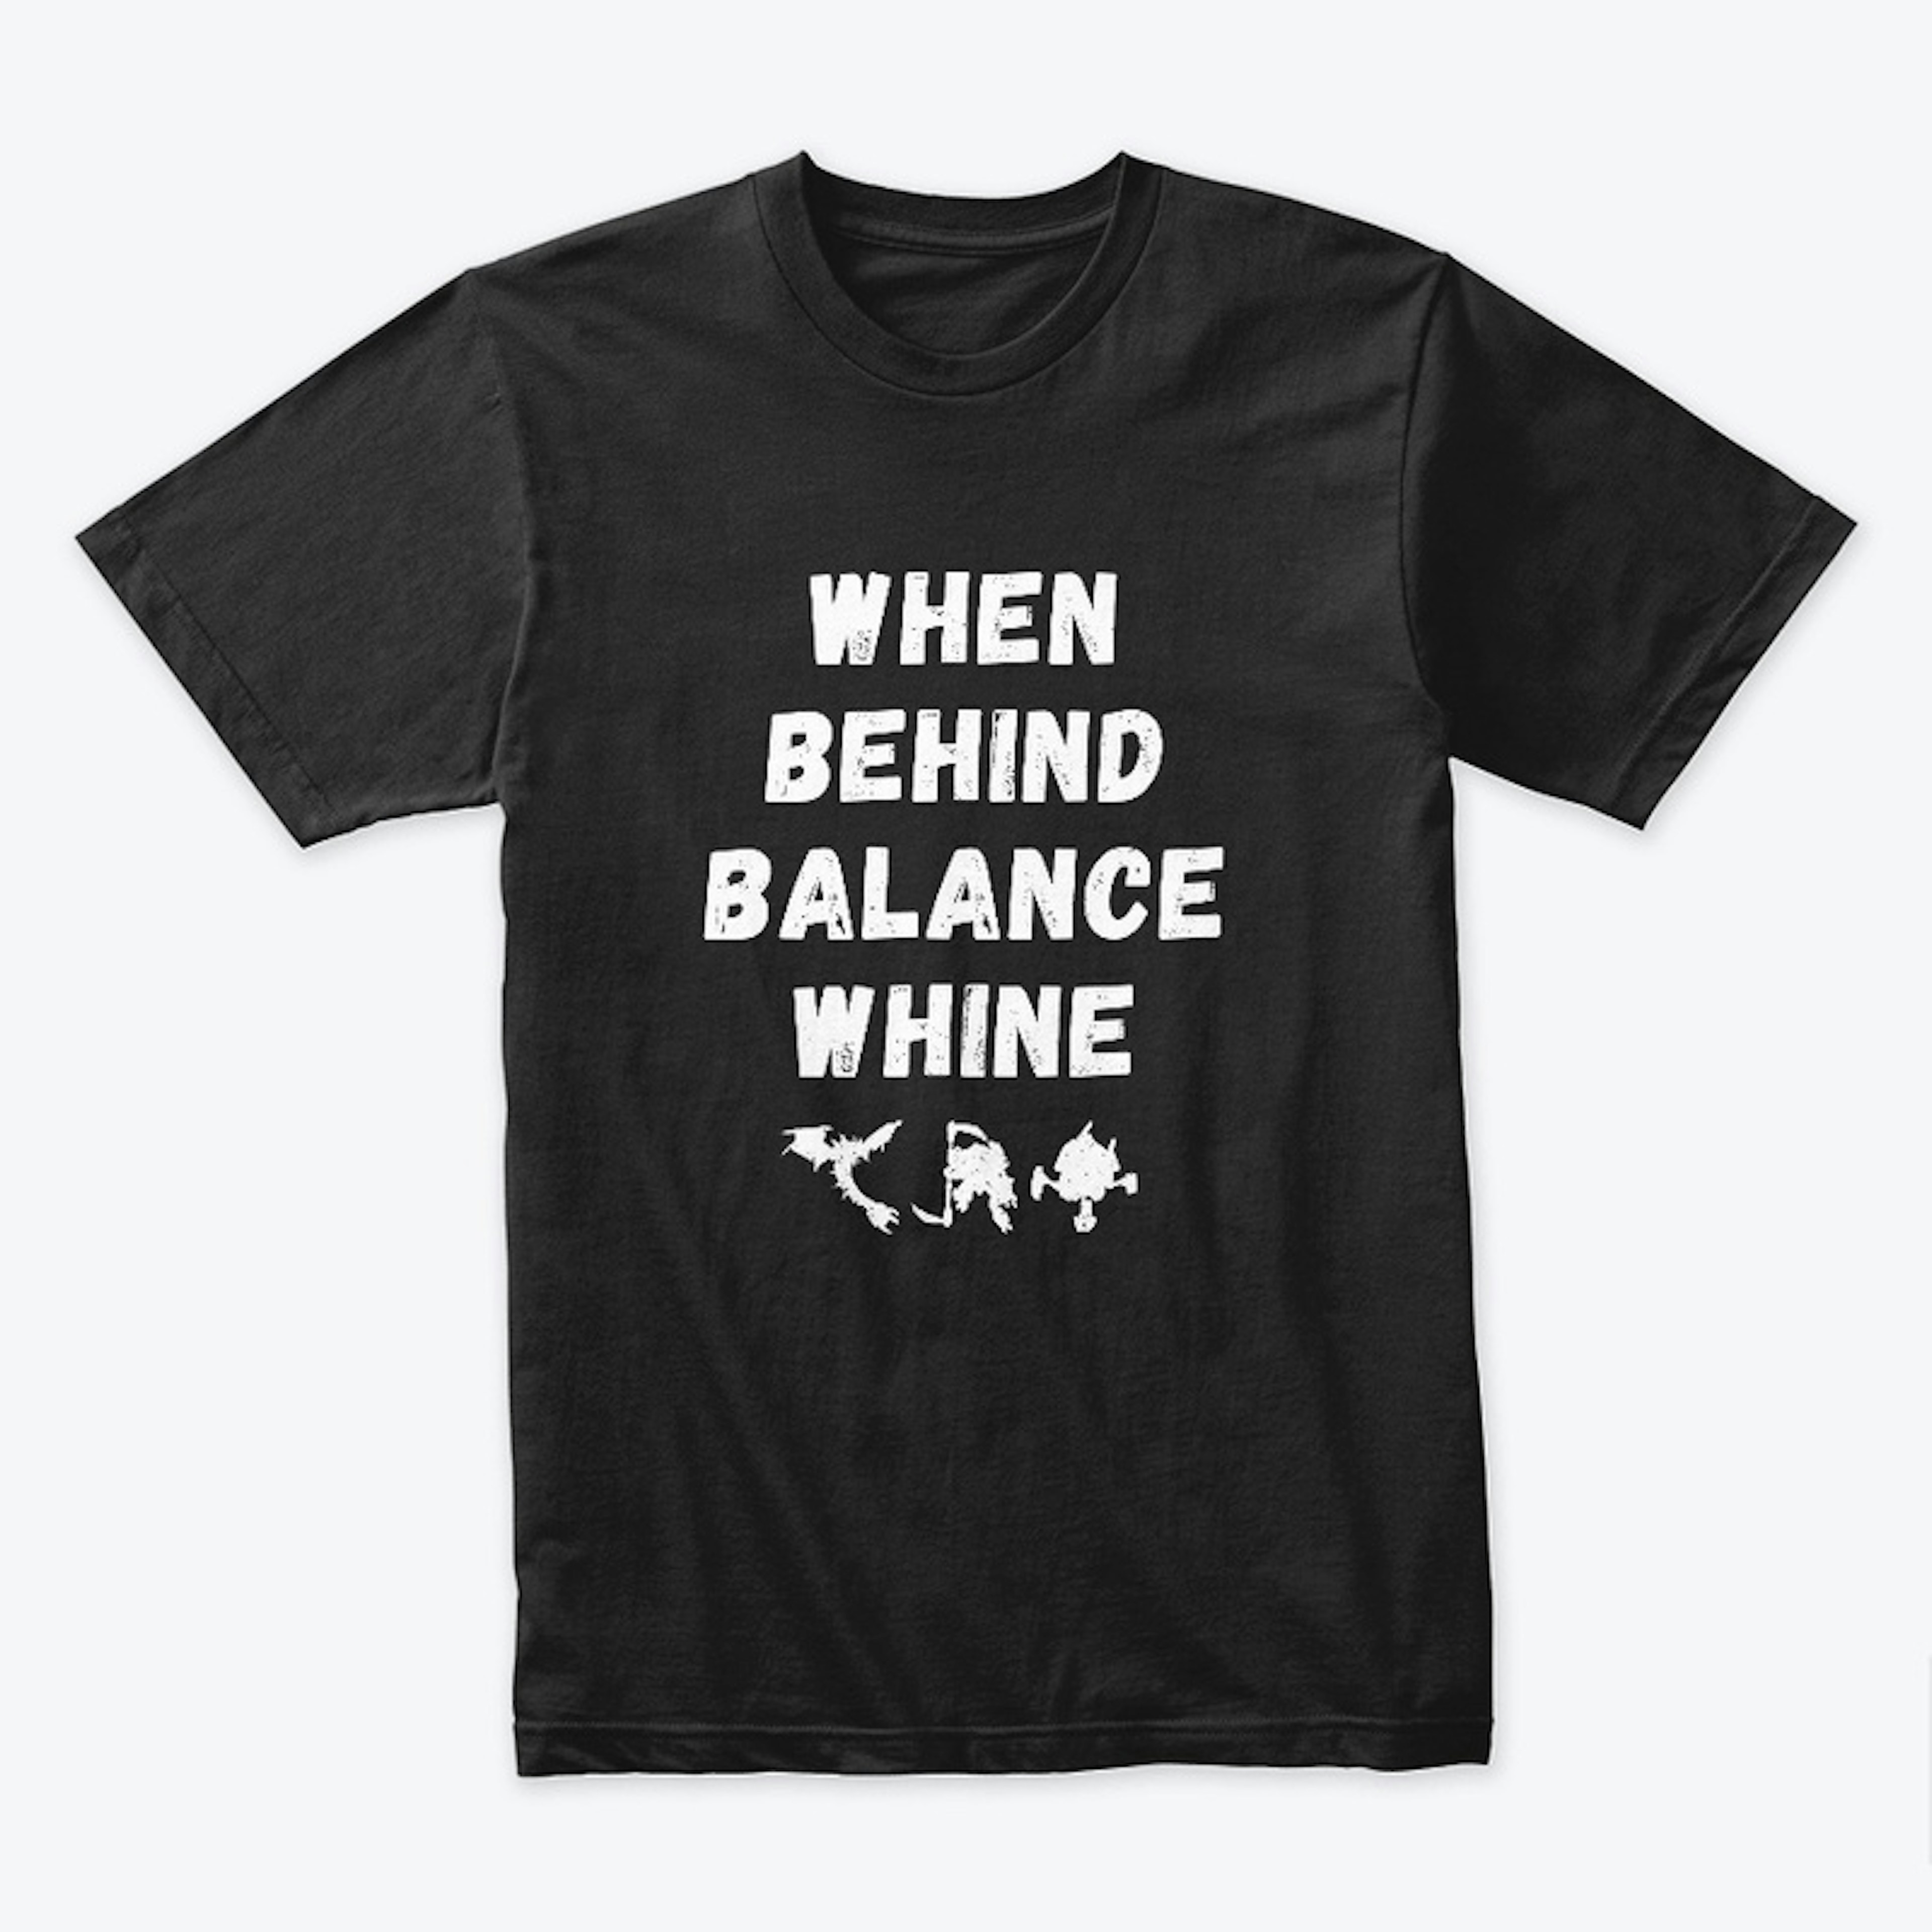 When Behind Balance Whine